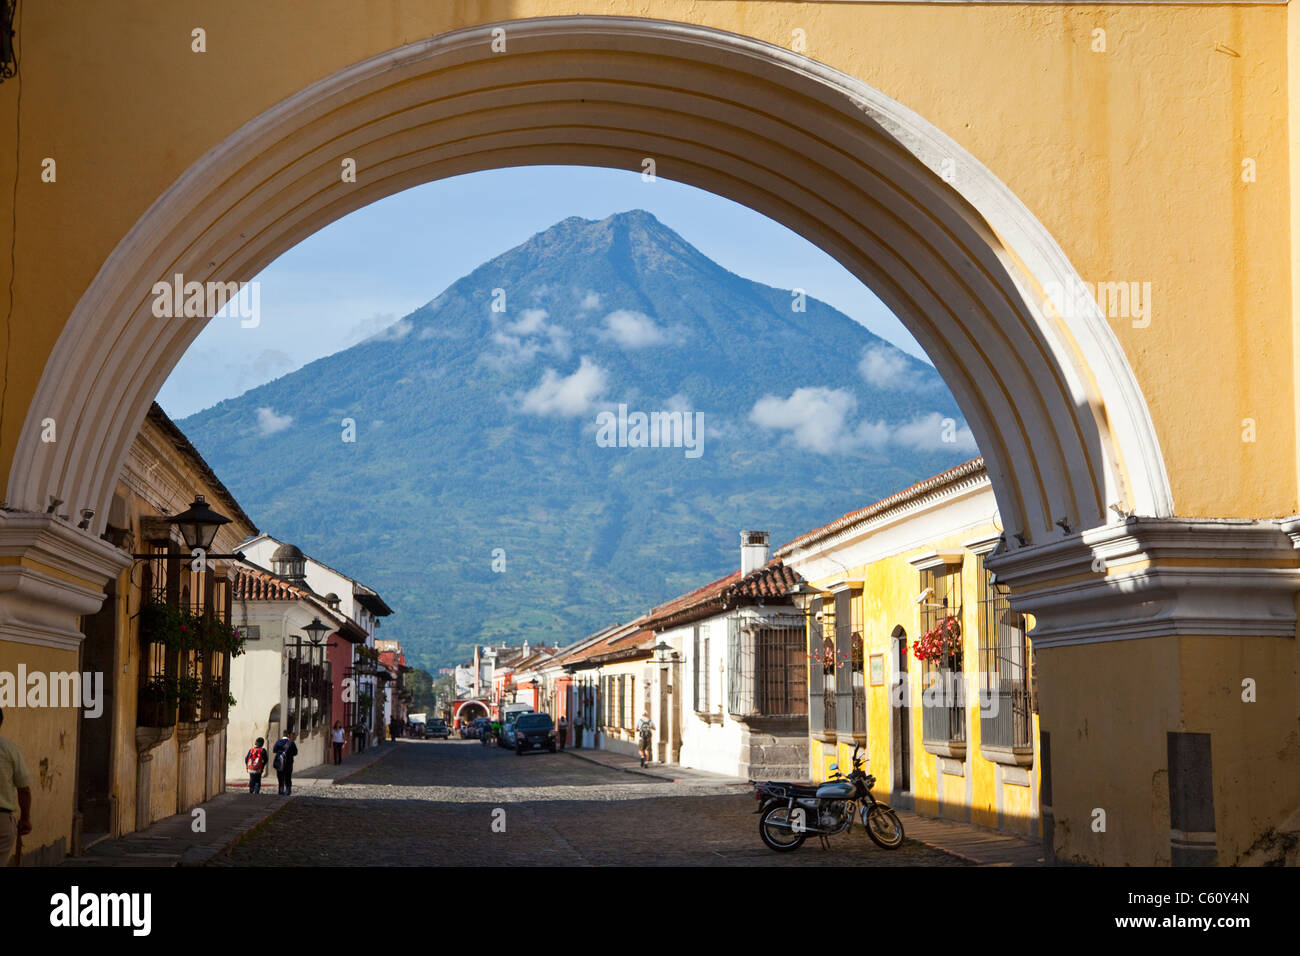 Volcan Agua, Santa Catalina Arch, Calle del Arco, Antigua, Guatemala Stock Photo